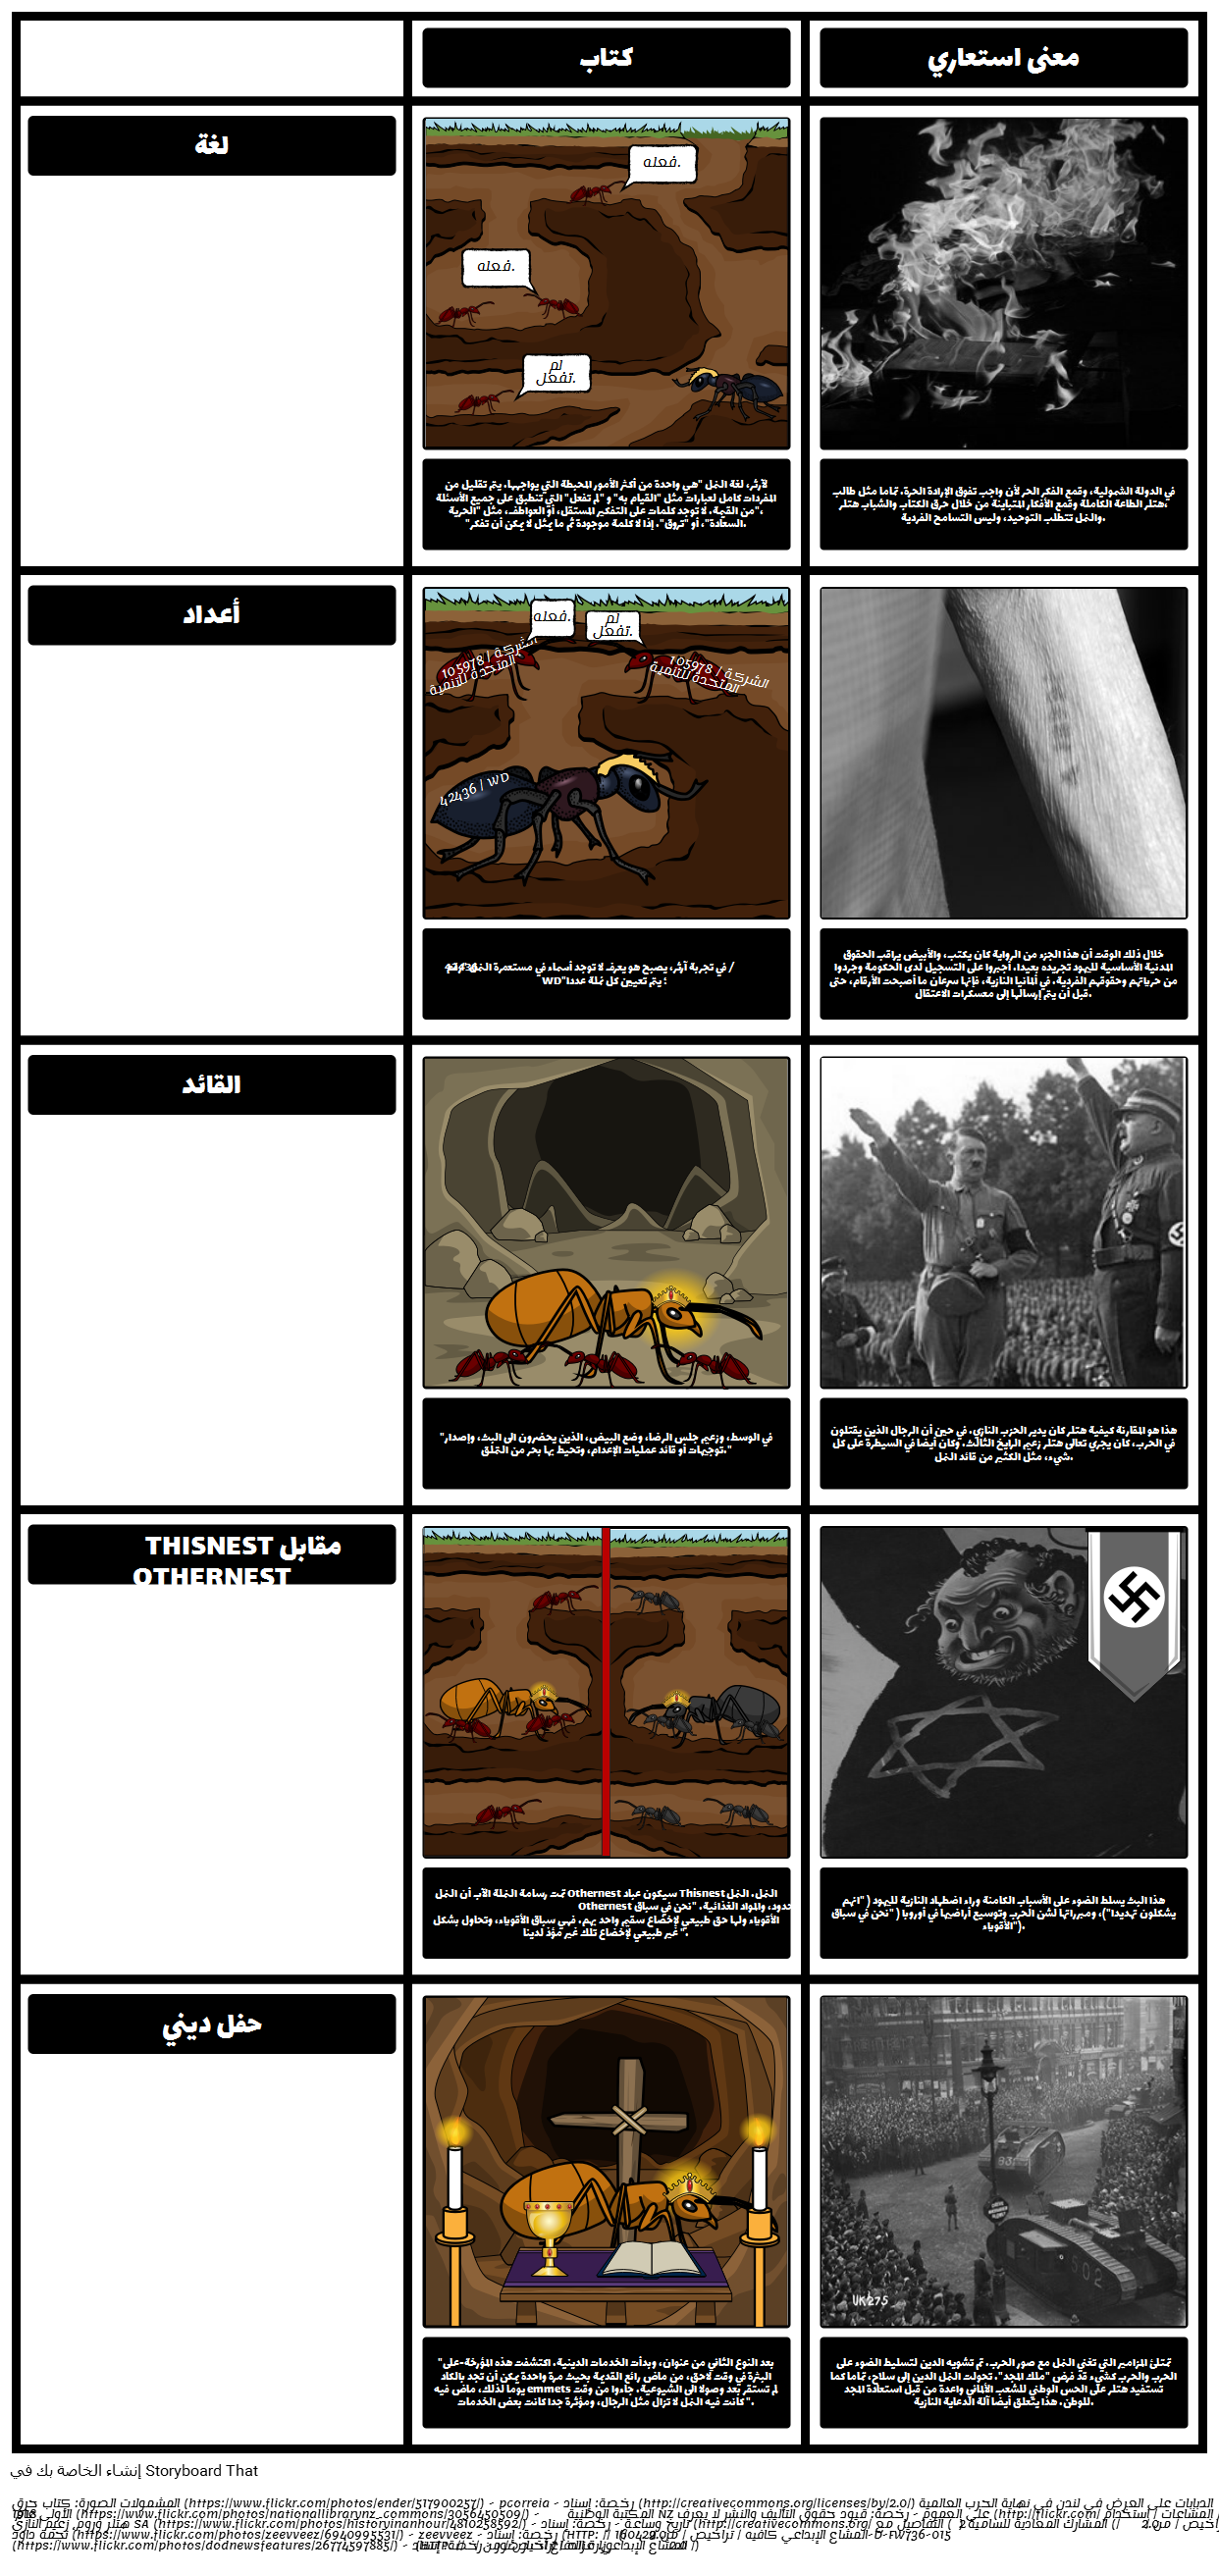 TOAFK - رمزية في الدرس من النمل في "السيف العجيب"